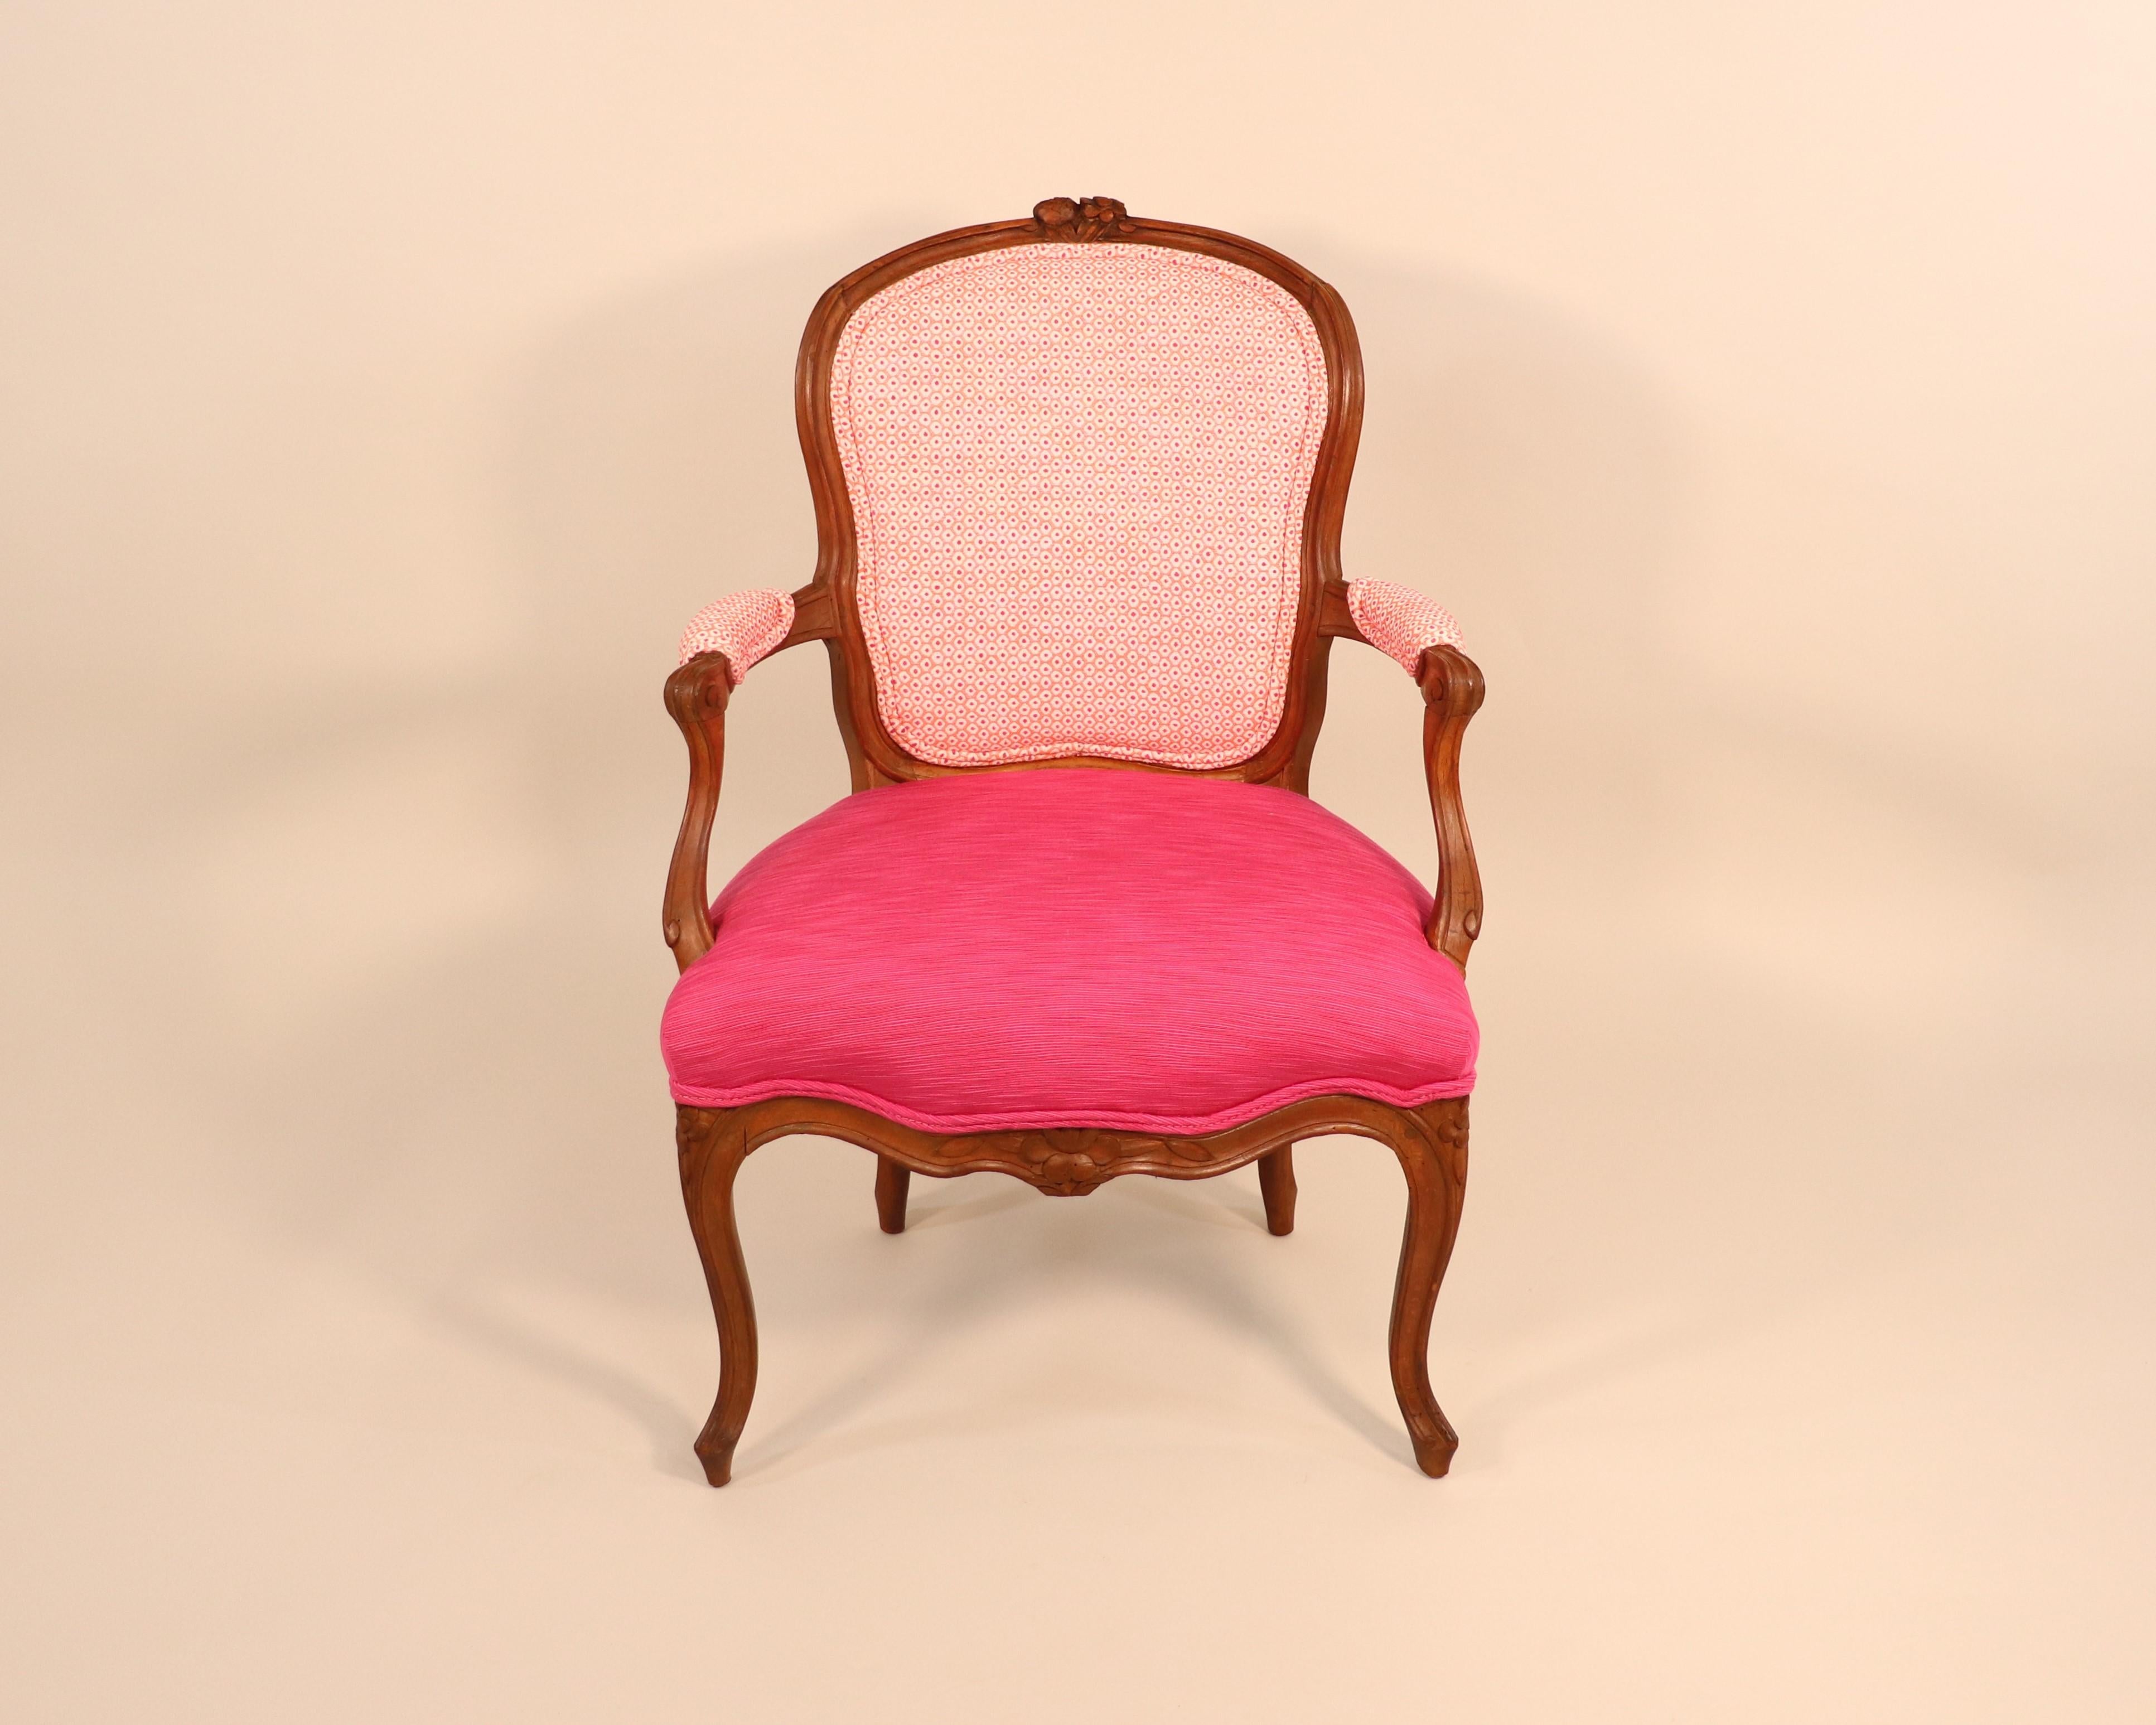 Dieser französische Stuhl der Louis XV-Periode aus dem 18. Jahrhundert ist hervorragend verarbeitet. Sanfte S-Kurven und naturalistische Blumenmotive sind charakteristisch für diese Zeit. Es wird vermutet, dass die zunehmende gesellschaftliche